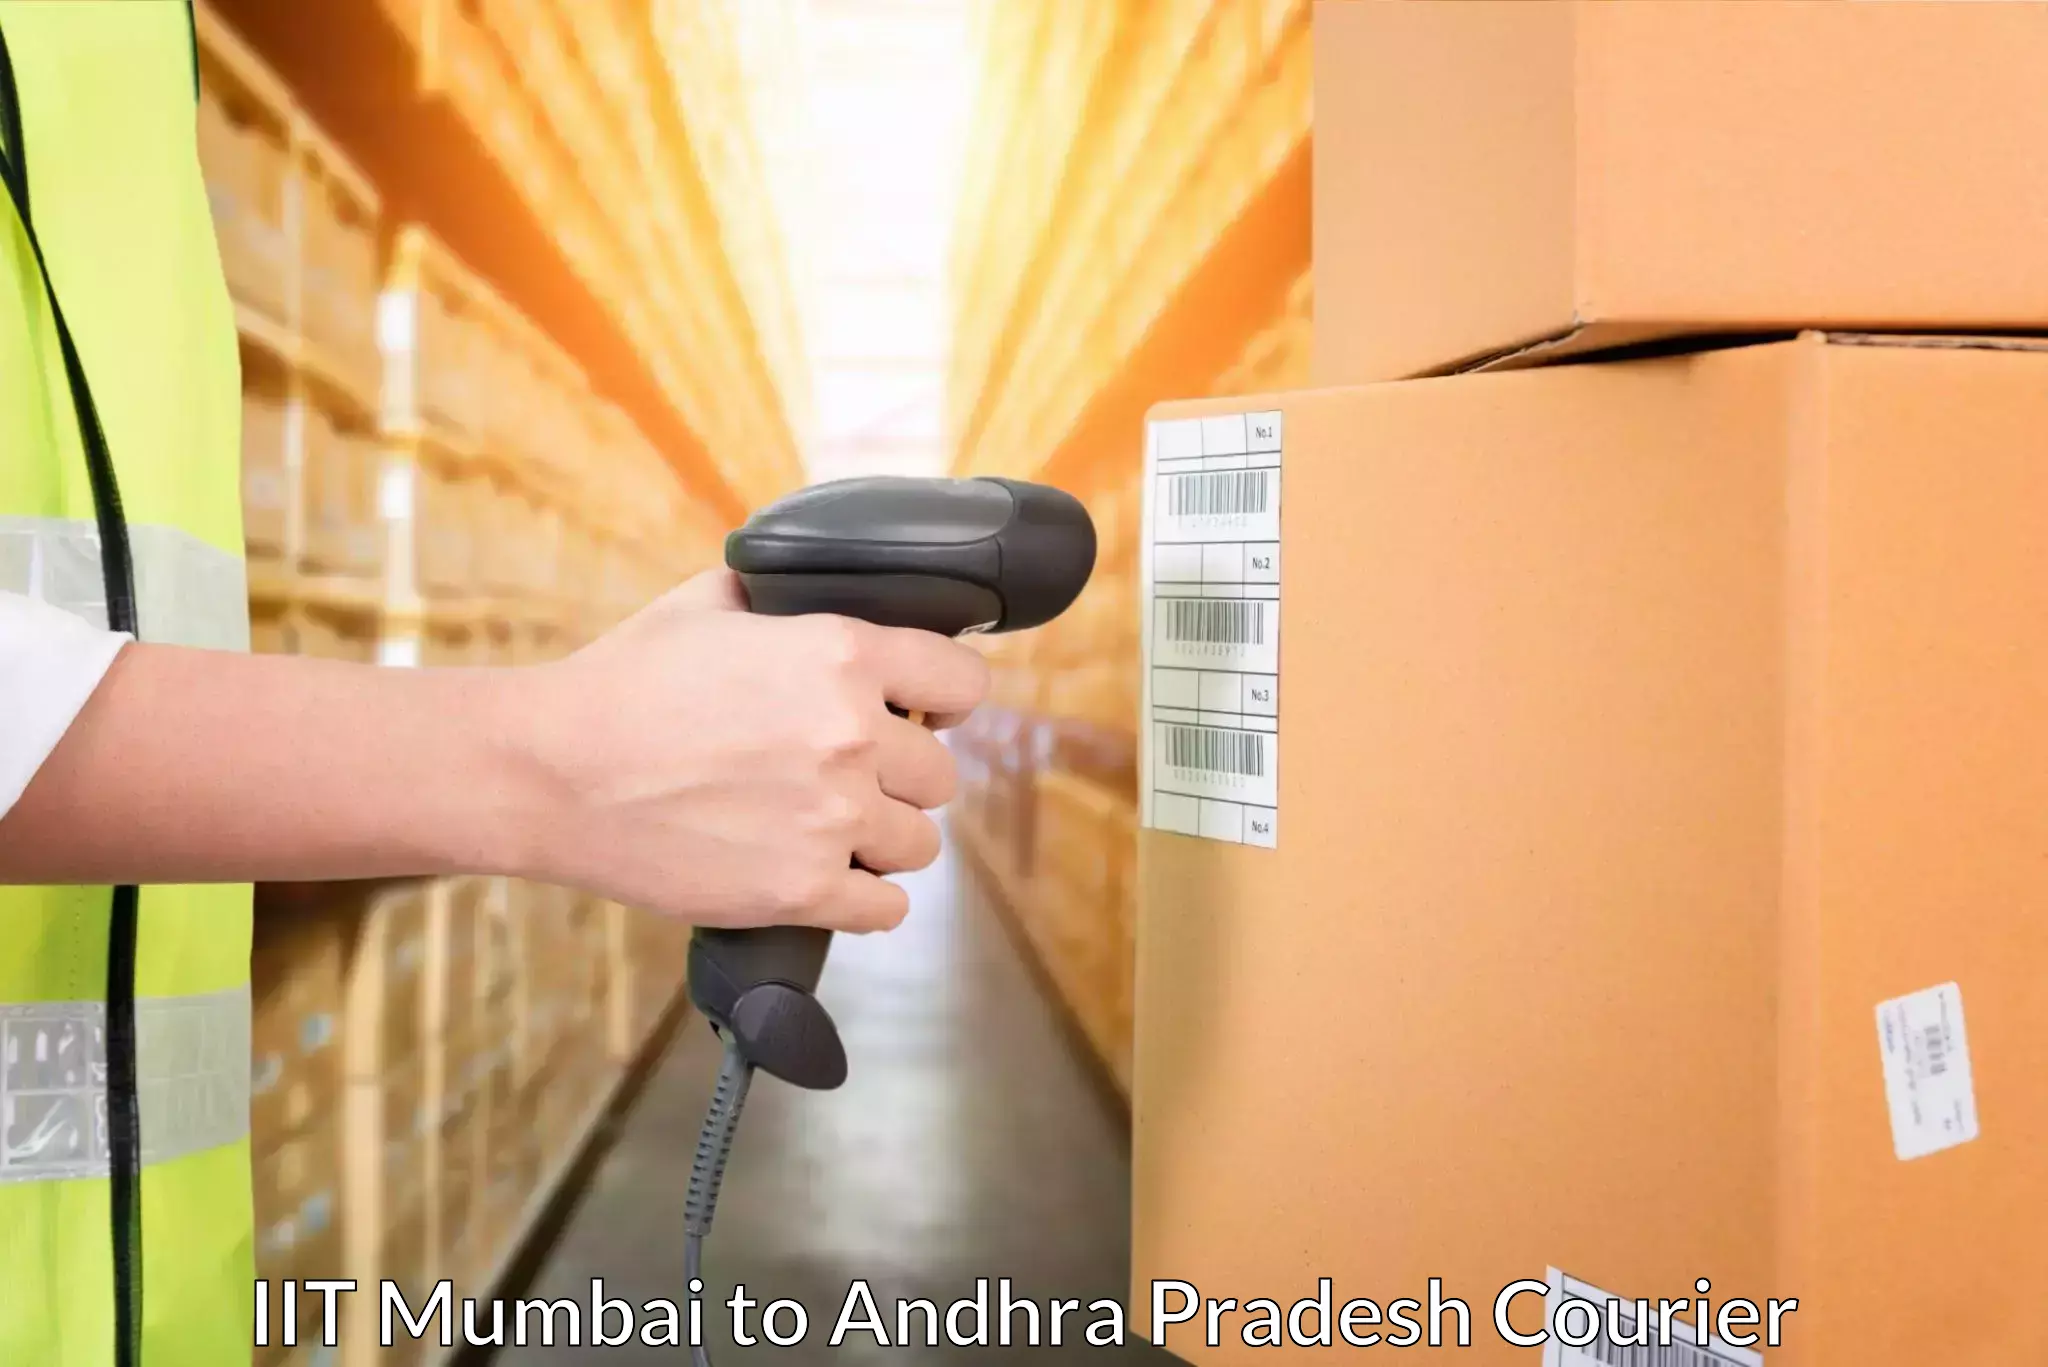 Global logistics network IIT Mumbai to Palasa